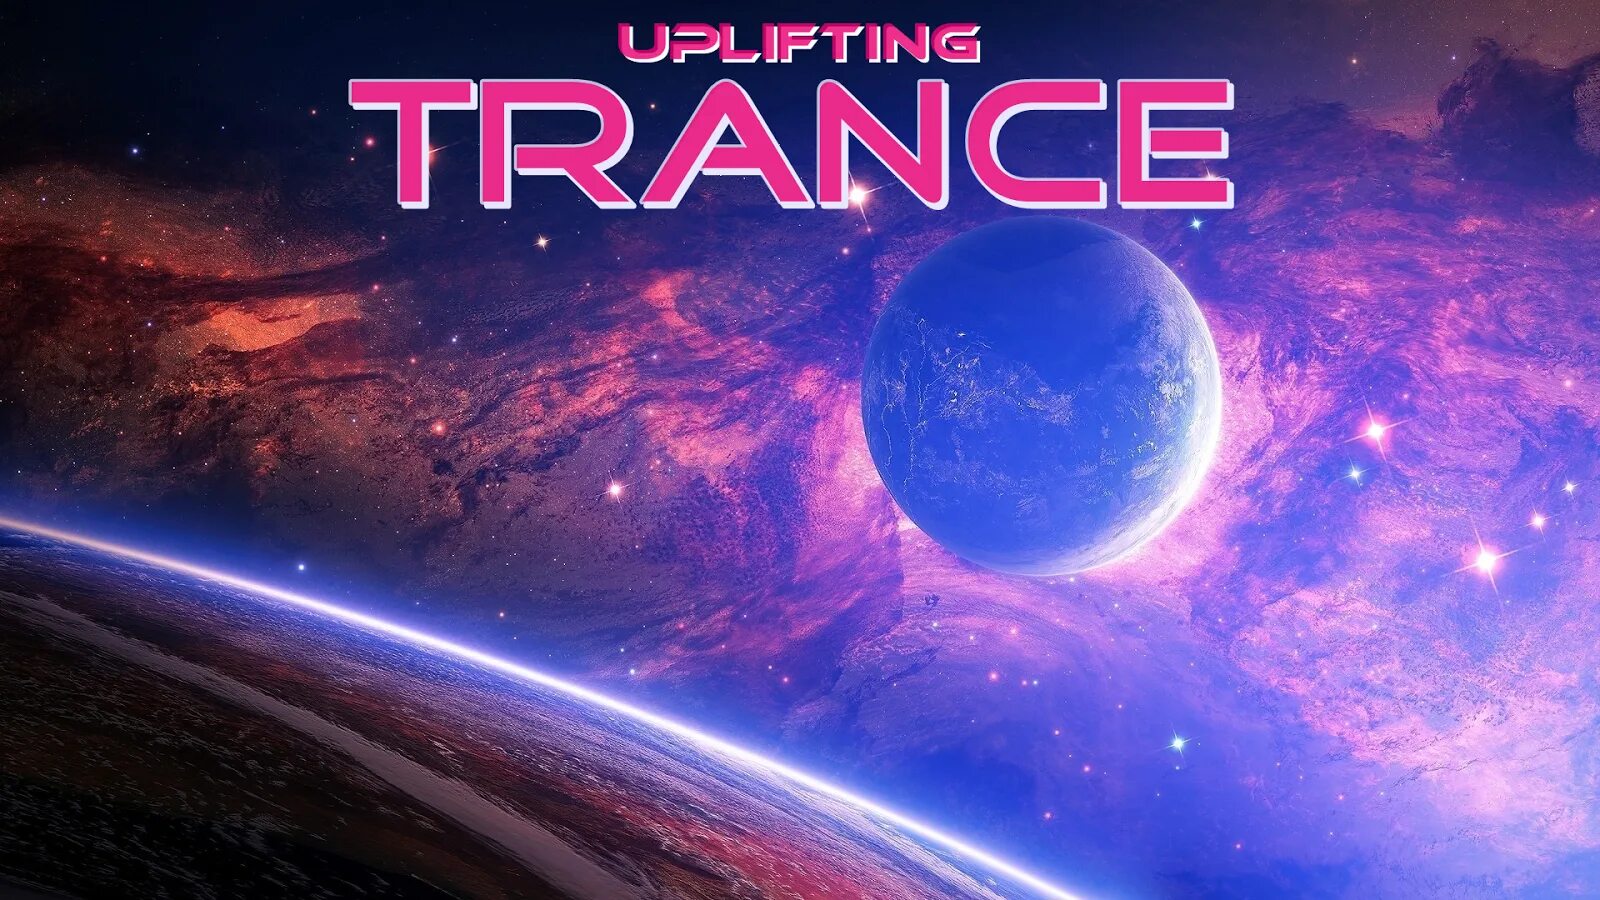 Транс музыка слова. Uplifting Trance. Trance обложка. Обложки транс музыки. Uplifting Trance картинки.